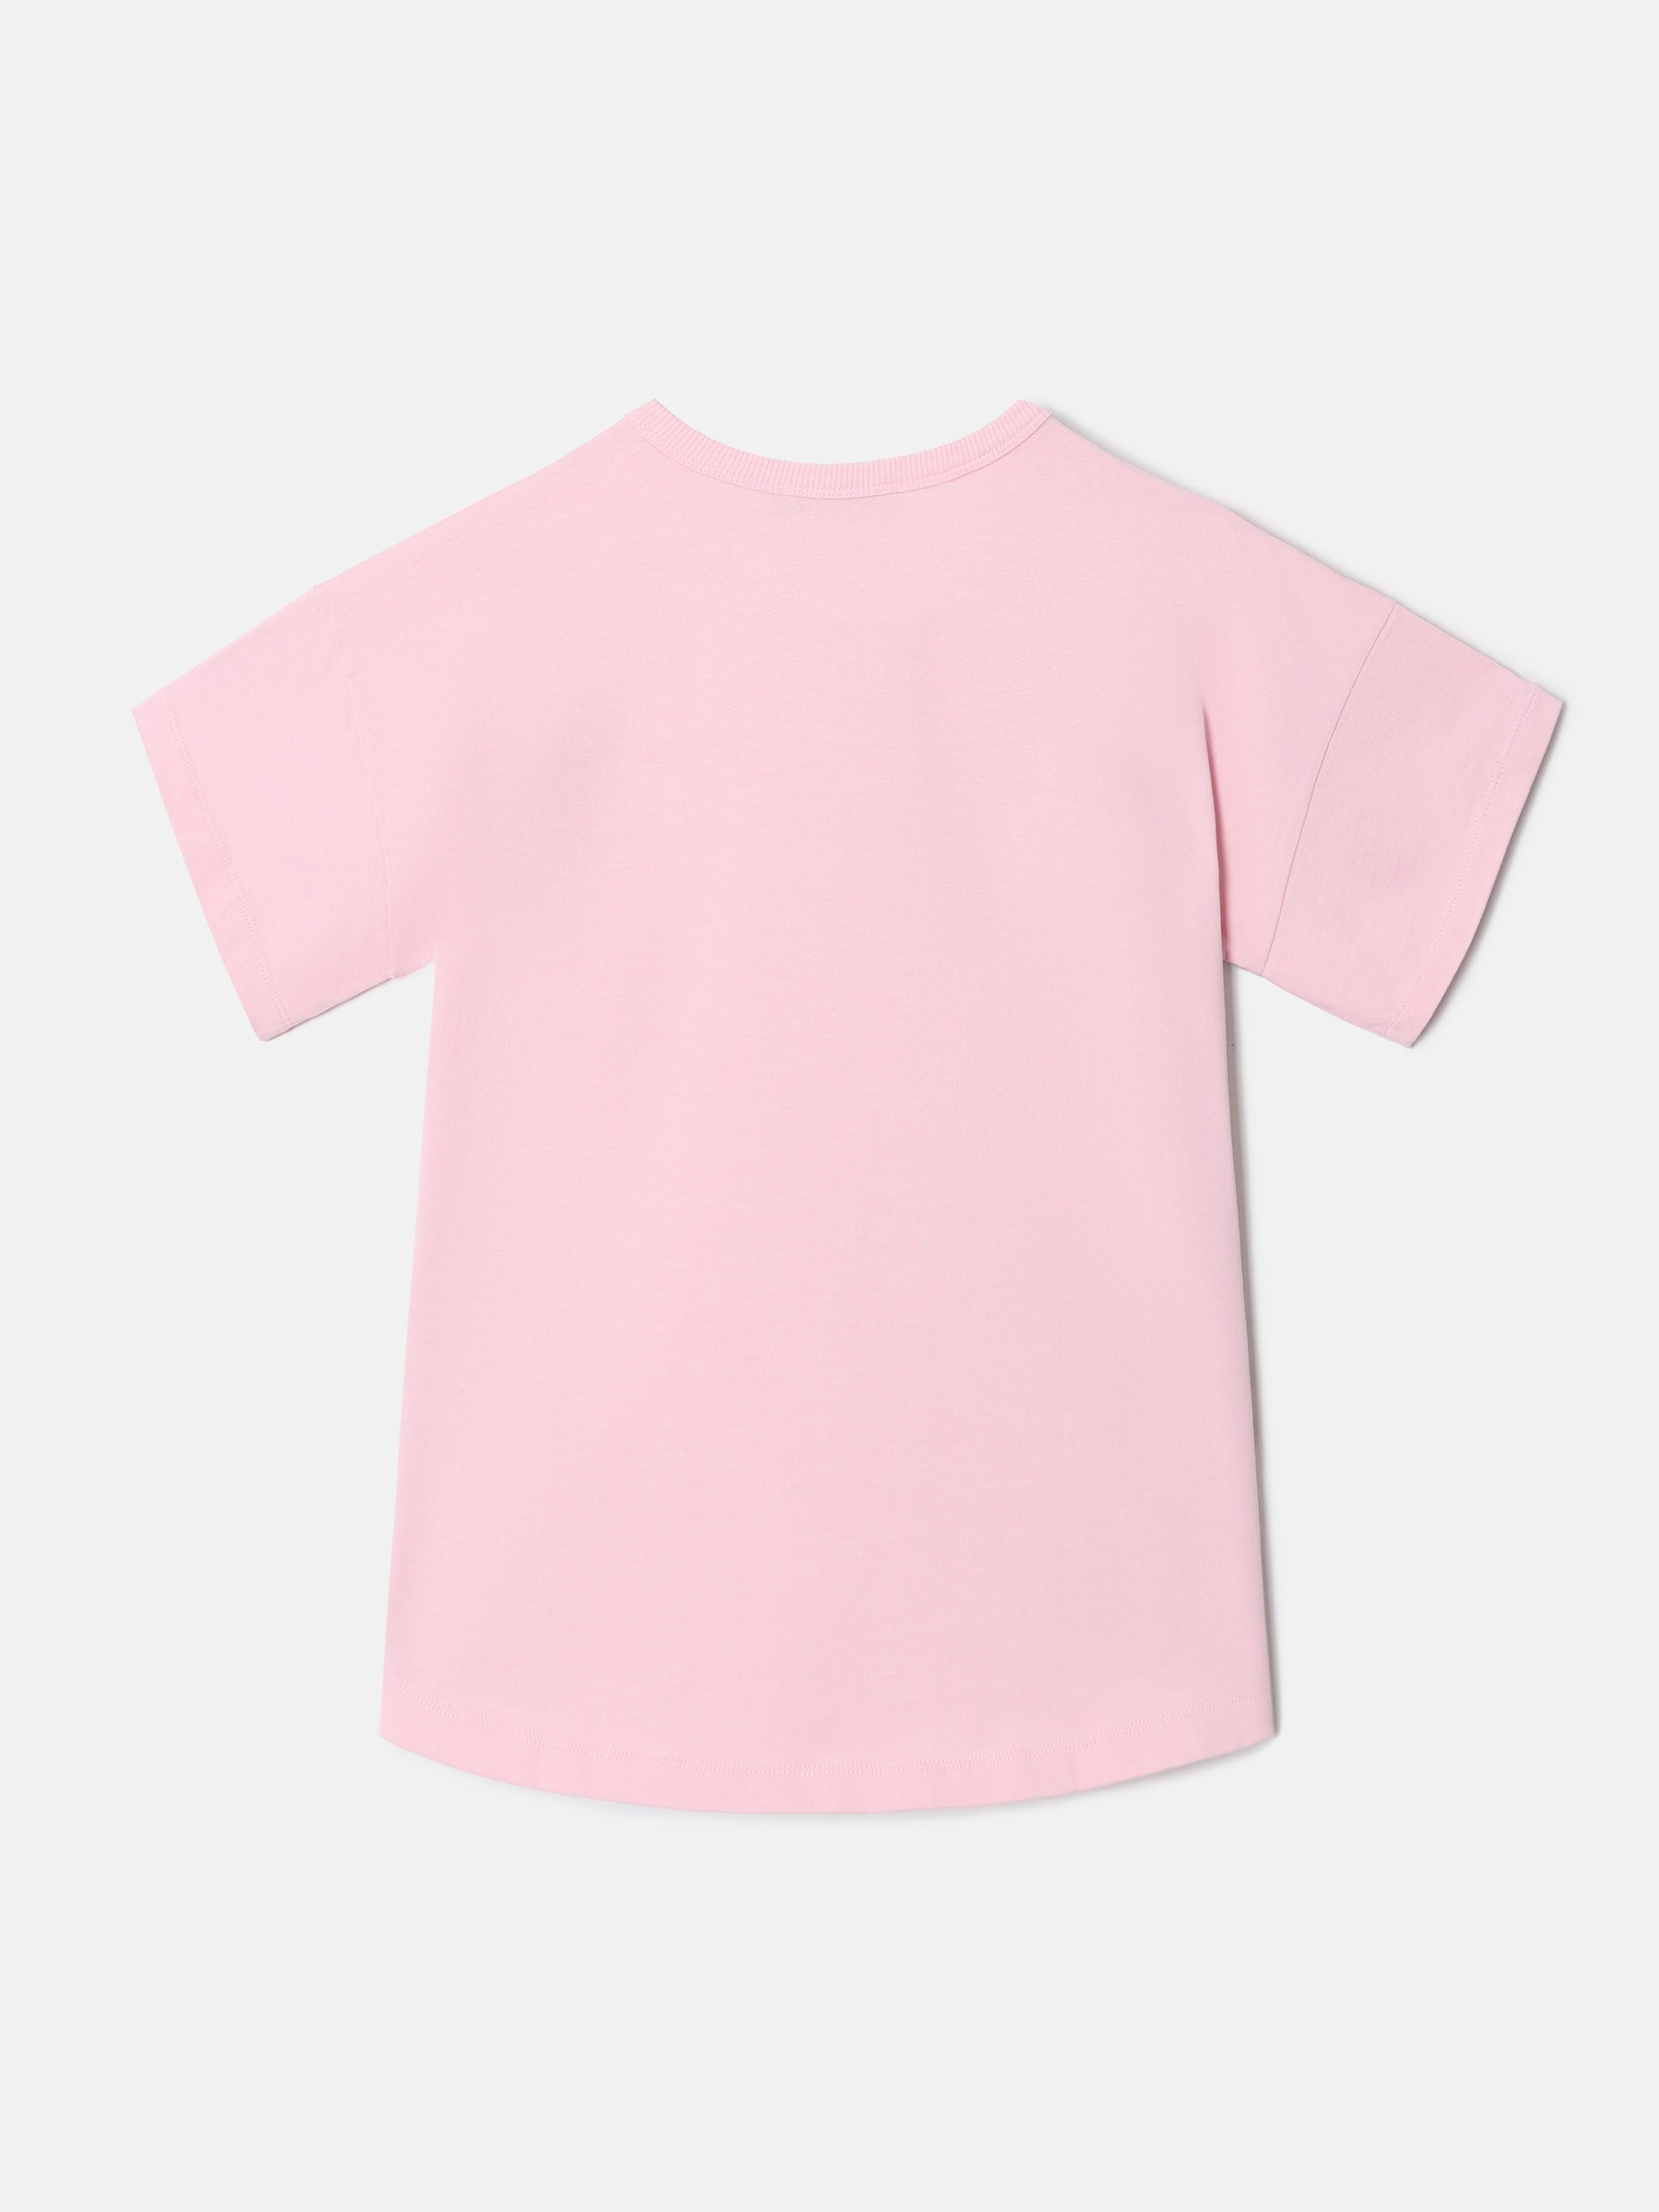 Camiseta woman silbon mini rosa 